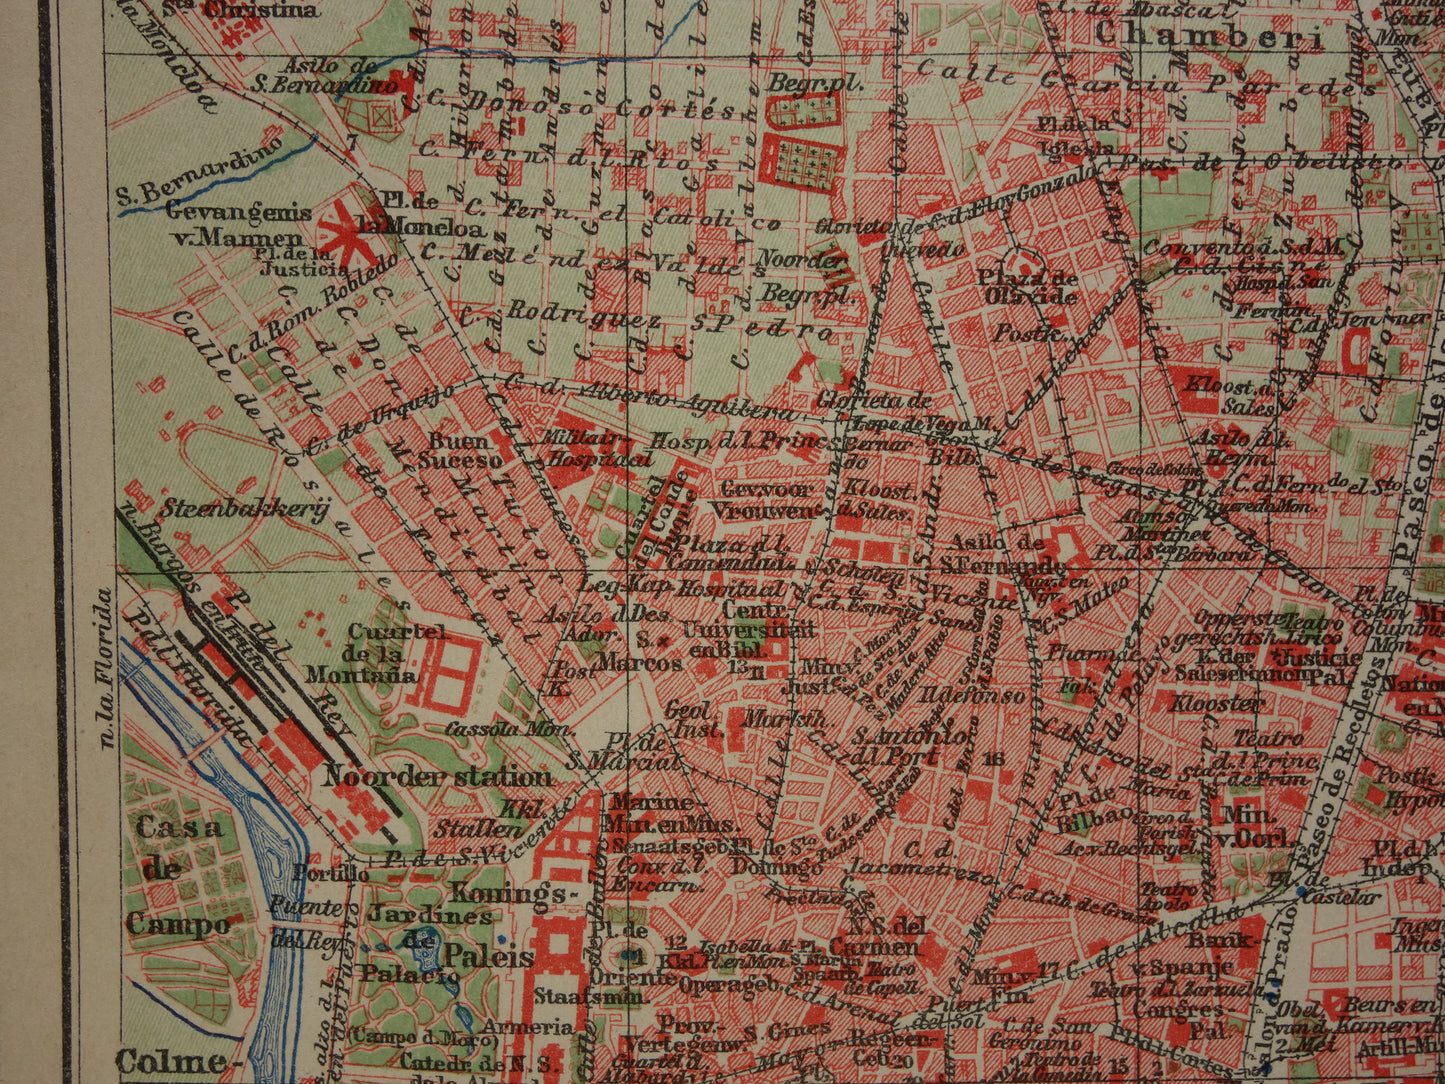 MADRID oude kaart van Madrid Spanje uit 1909 originele antieke plattegrond vintage landkaart